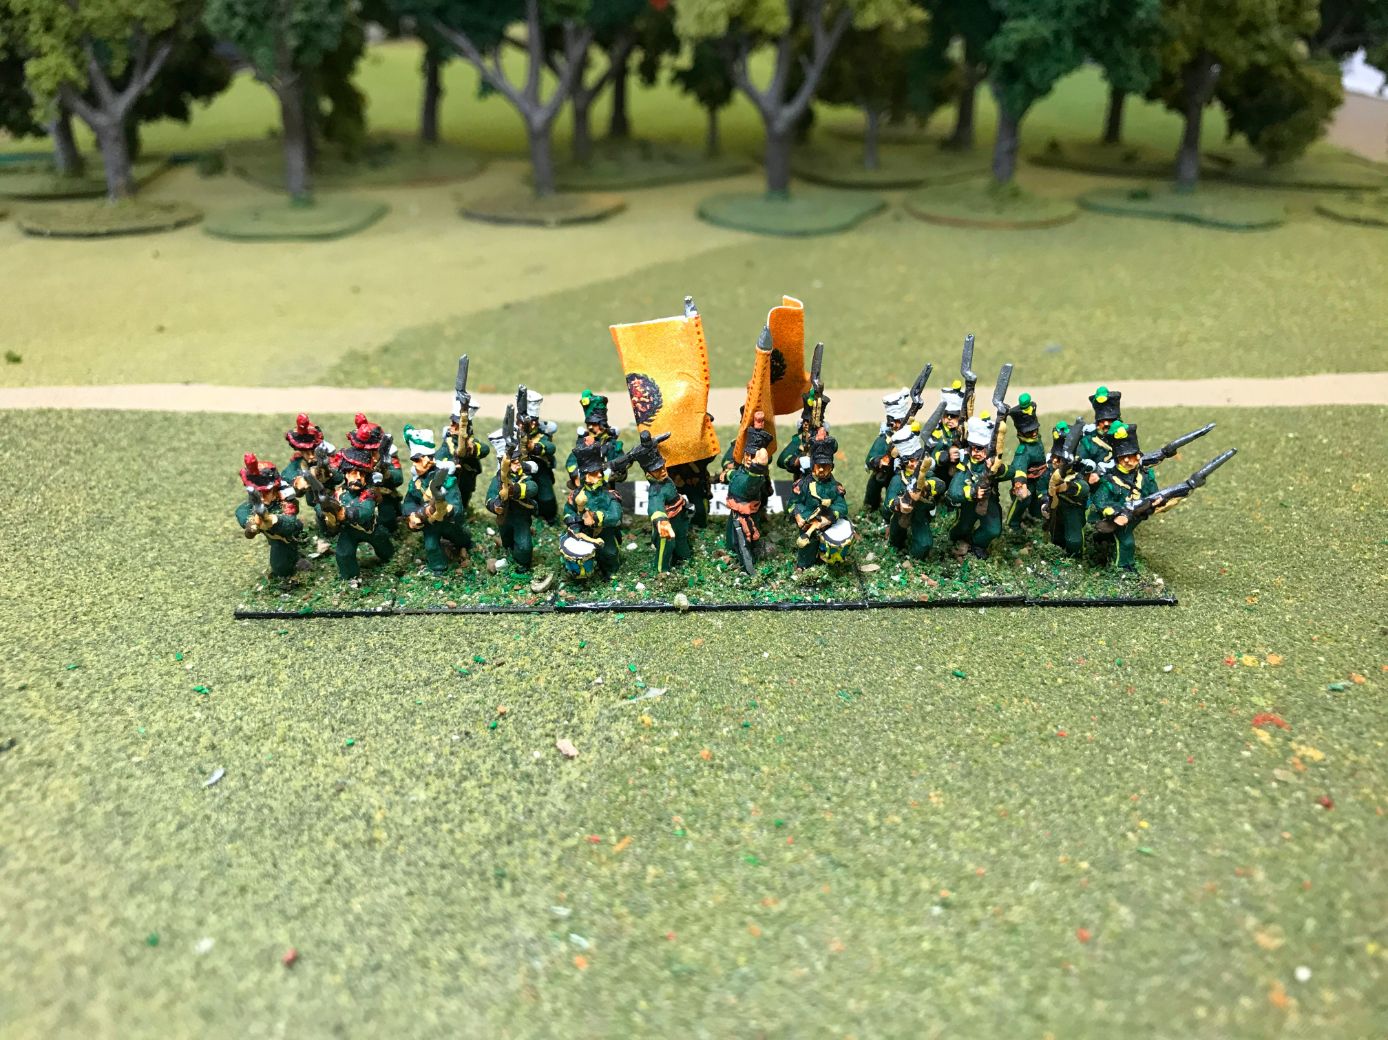 Nassau Infantry